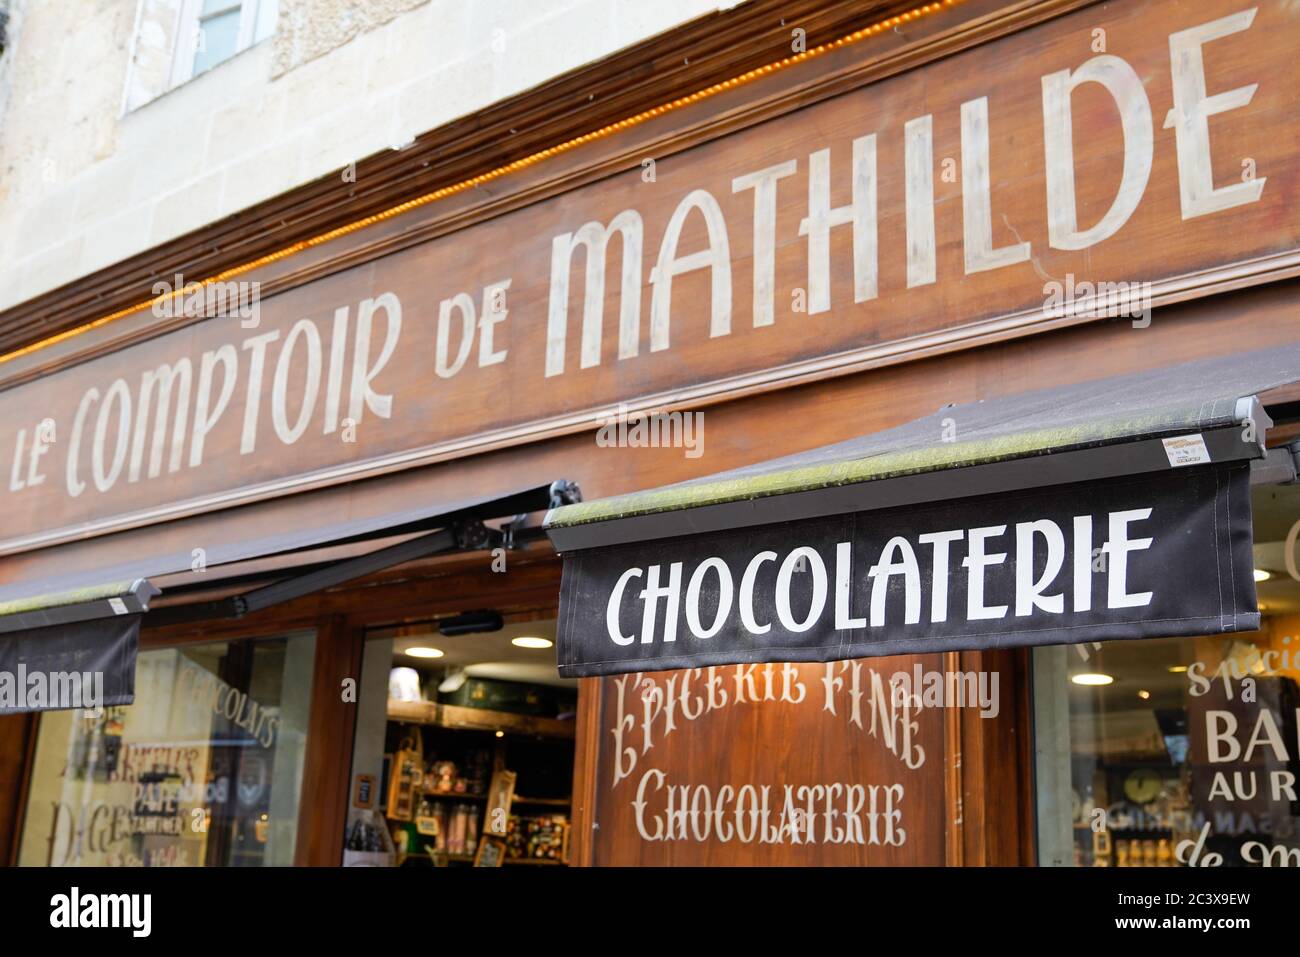 Le comptoir de Mathilde, sur la rue Sainte-Catherine, Bordeaux